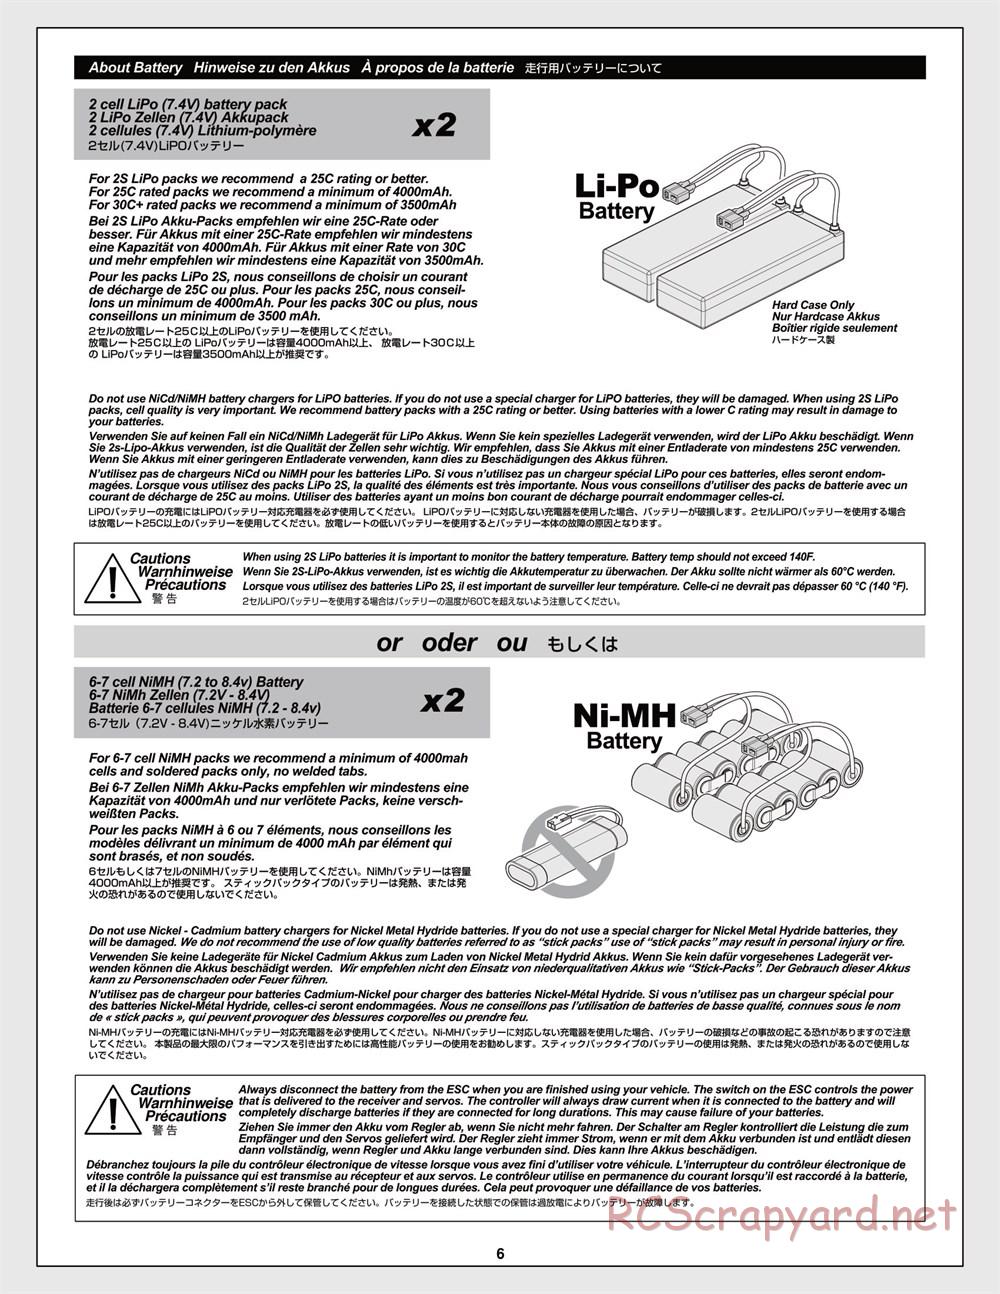 HPI - Trophy Flux Truggy - Manual - Page 6